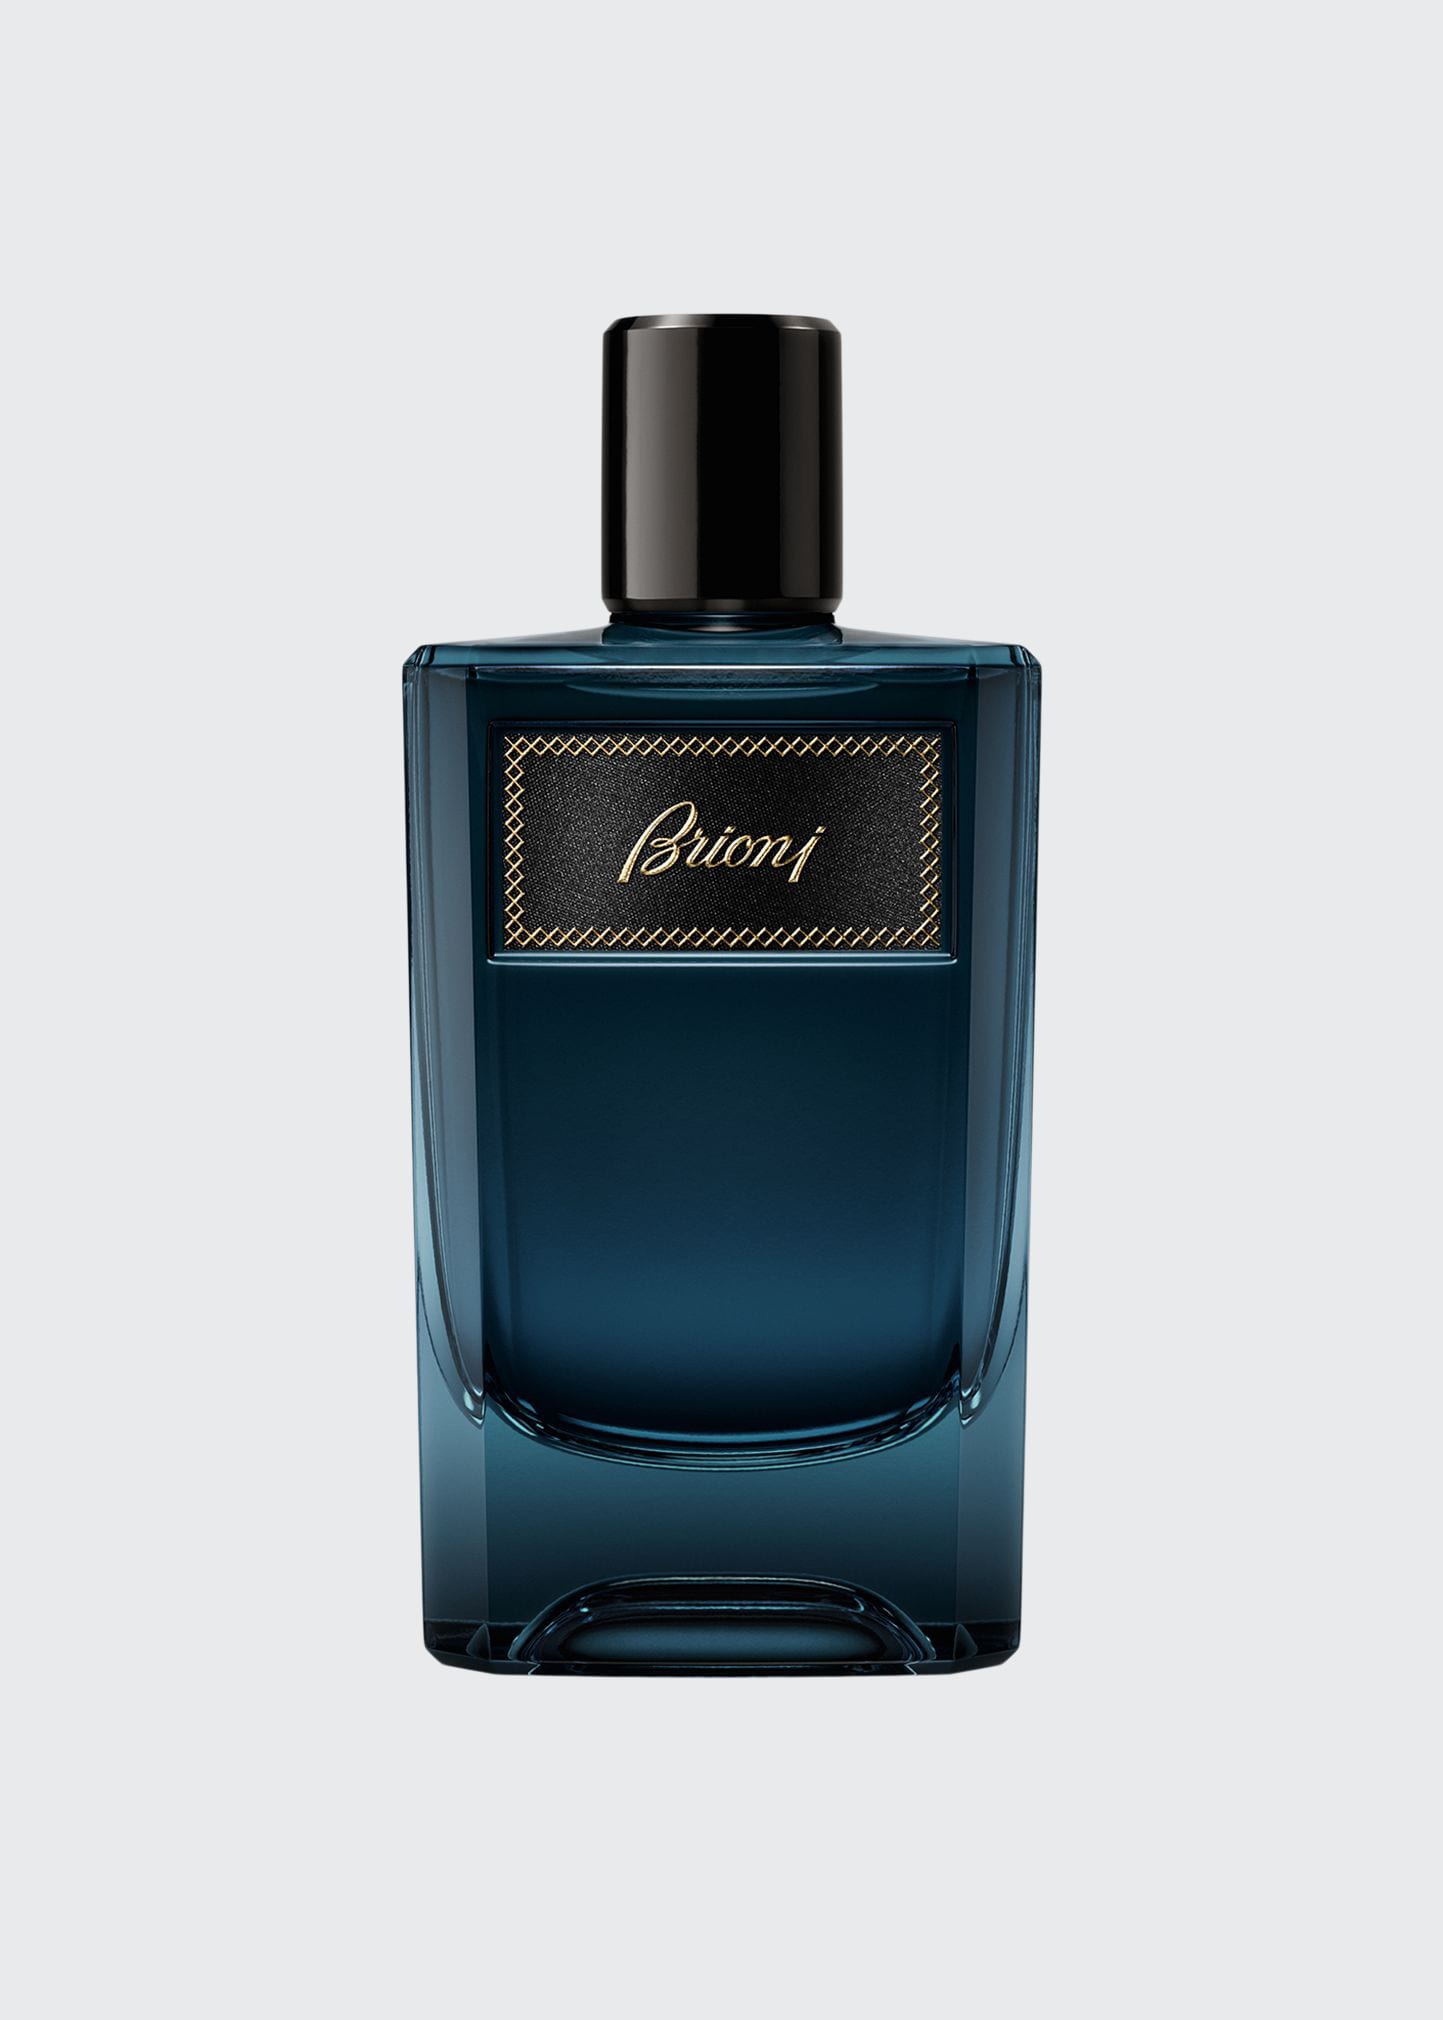 Brioni For Men Eau De Parfum, 3.4 Oz.